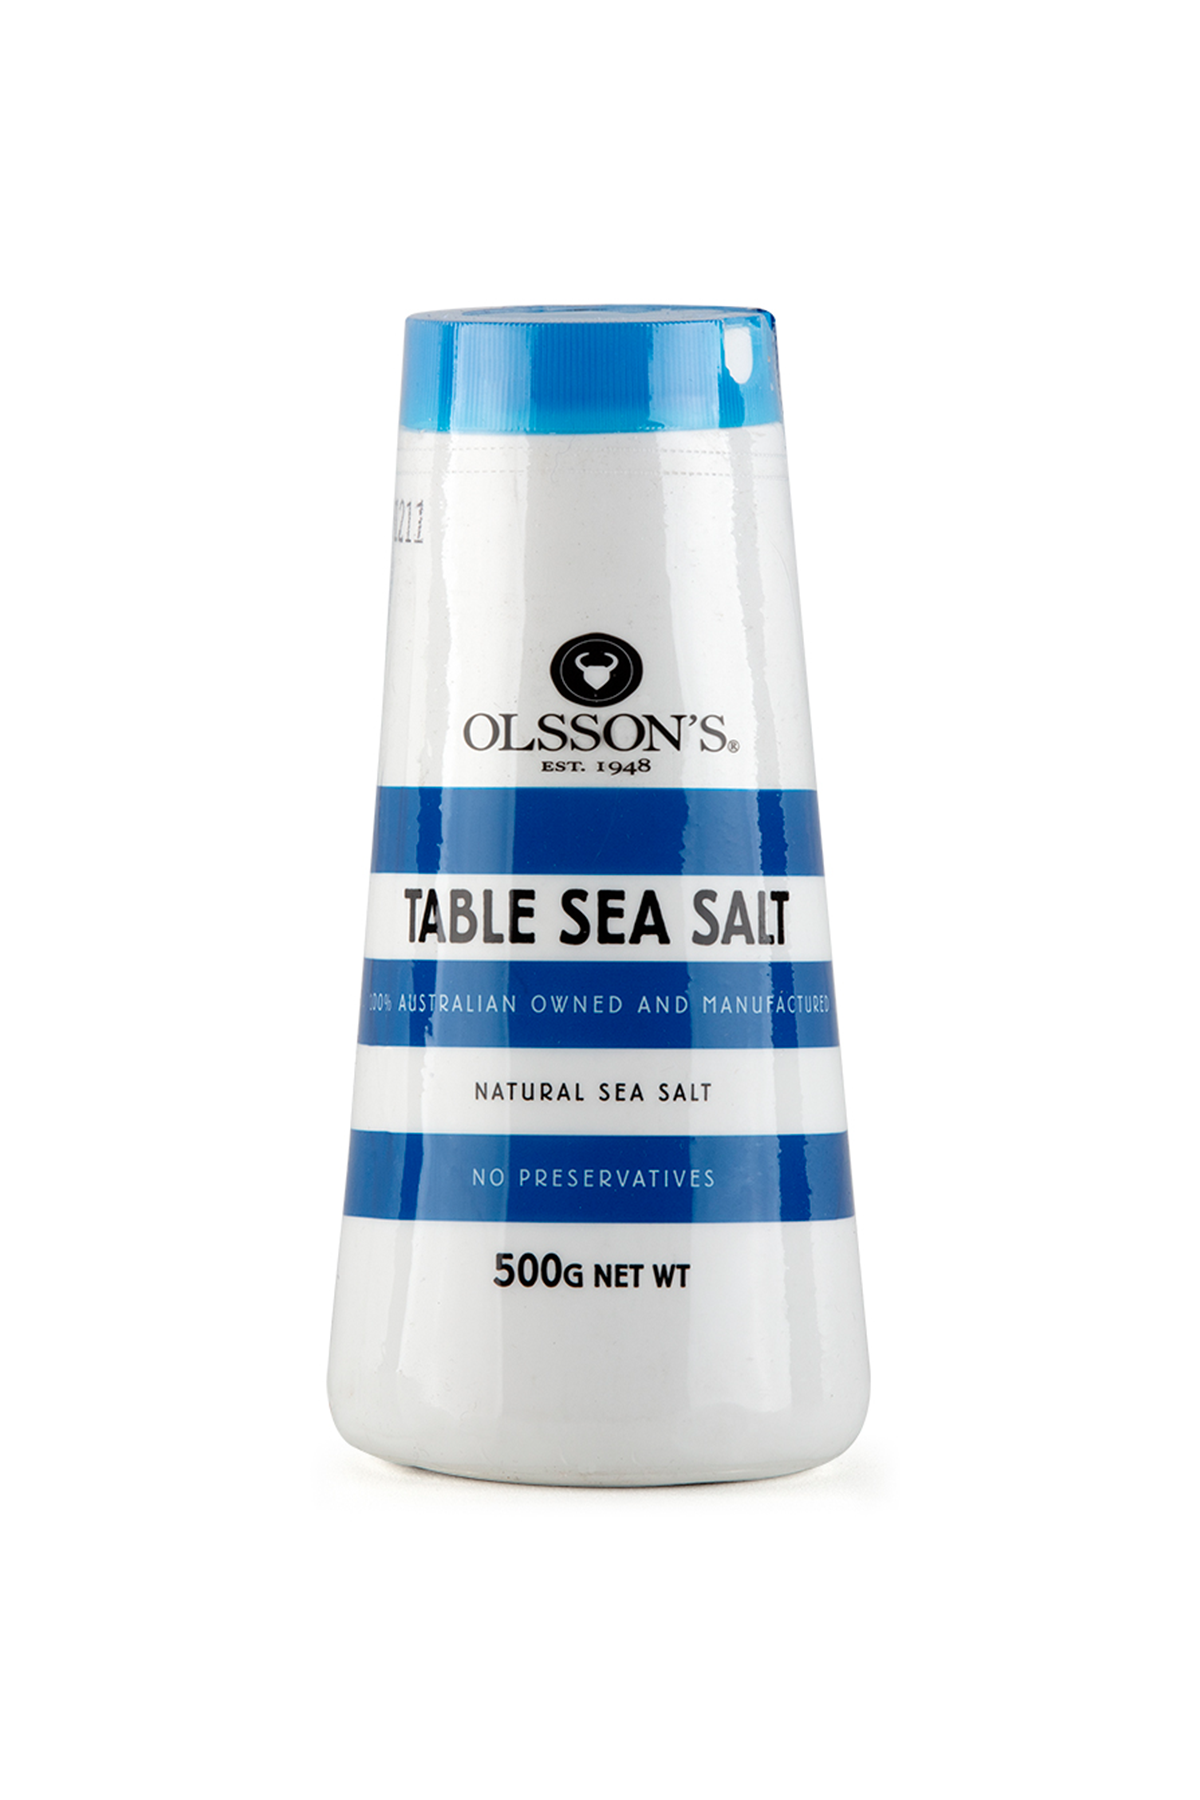 Olsson's Table Sea Salt 500g